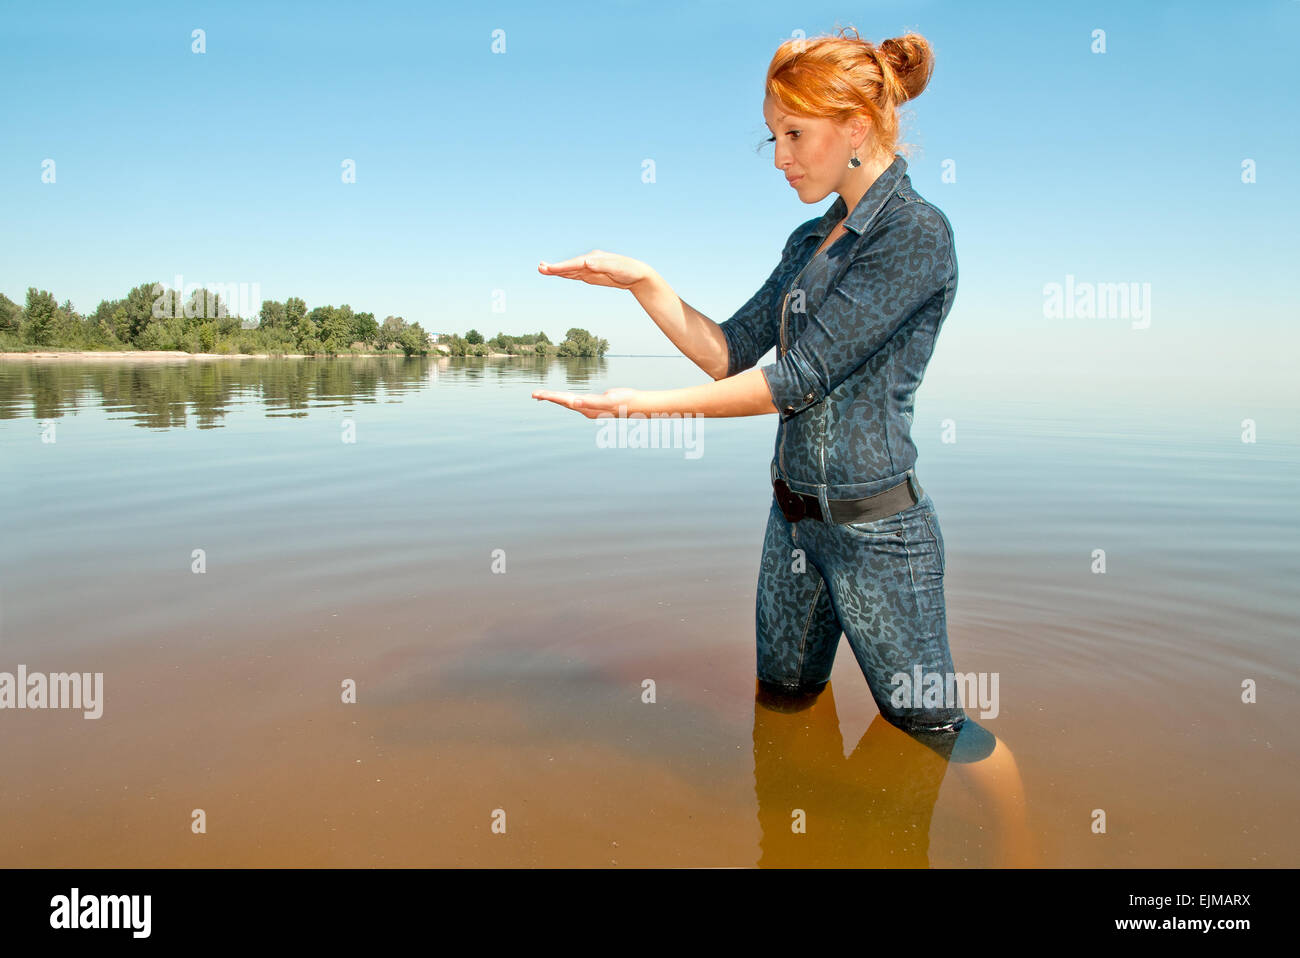 La ragazza con i capelli rossi. In piedi alle ginocchia in acqua, tenendo in mano un oggetto immaginario. Foto Stock